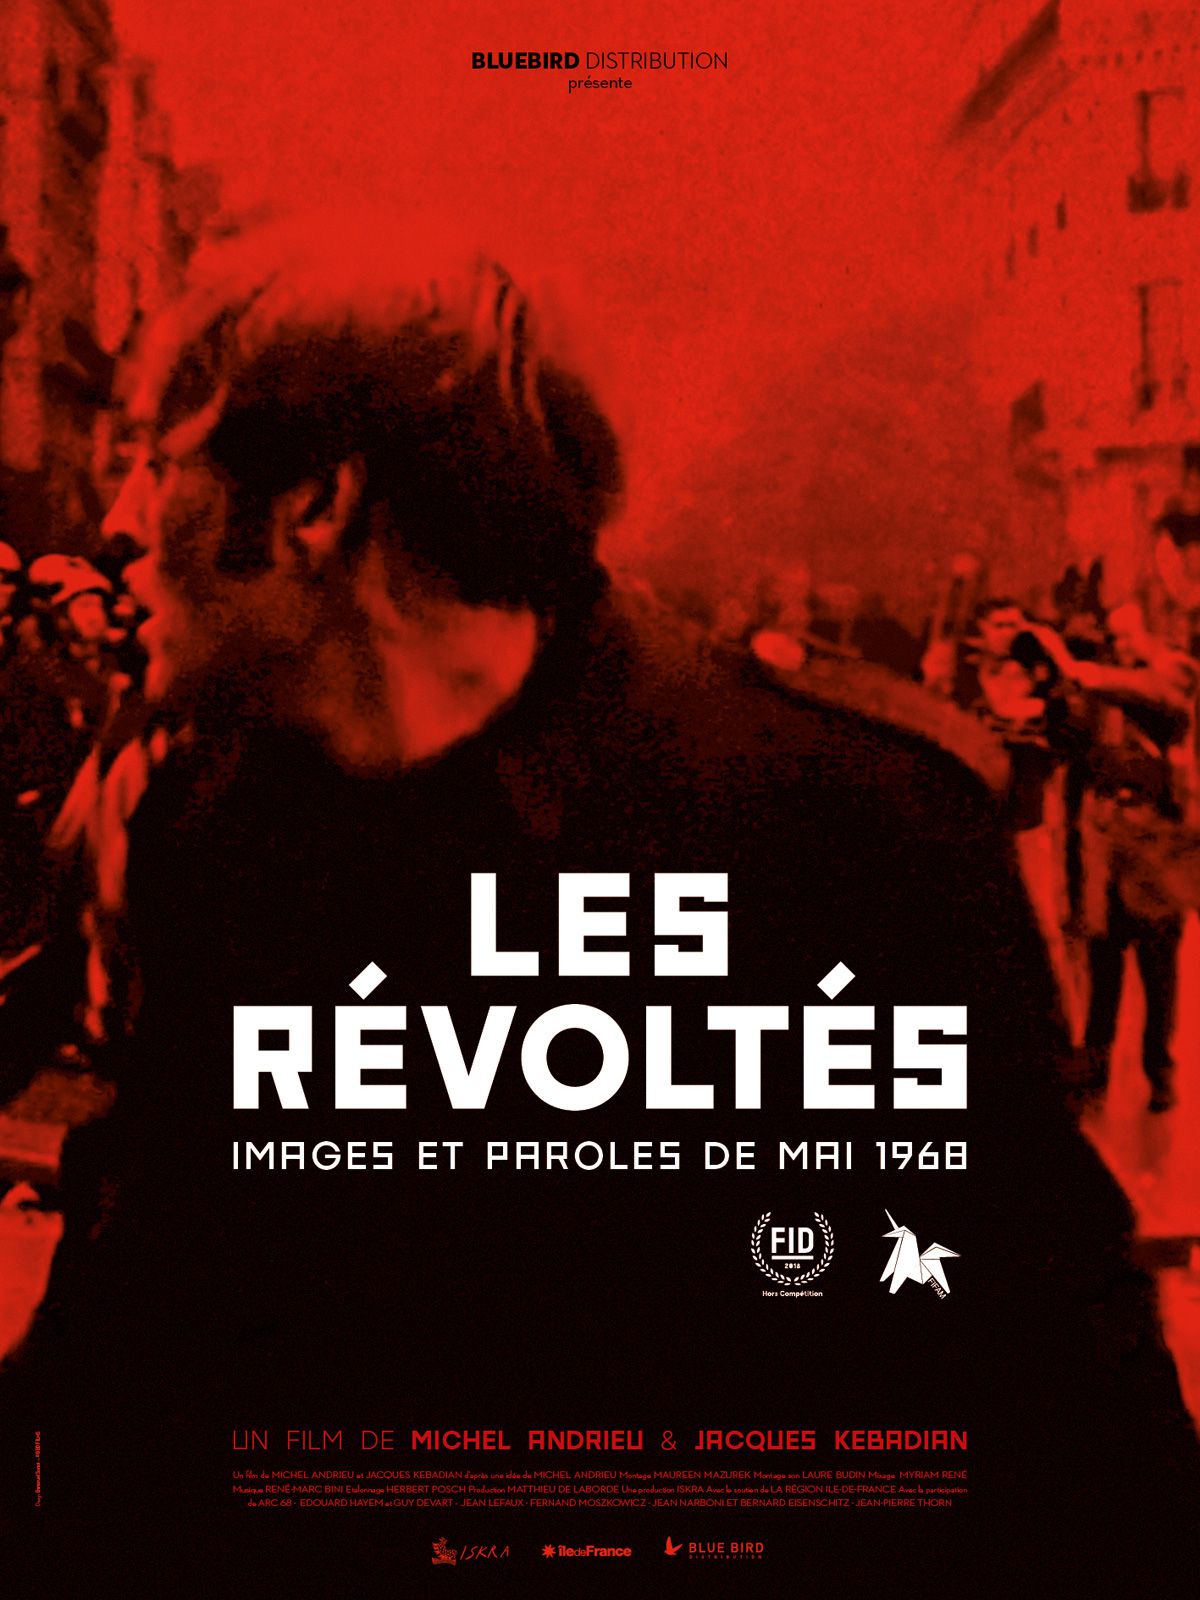 Les Révoltés - Documentaire (2019) streaming VF gratuit complet